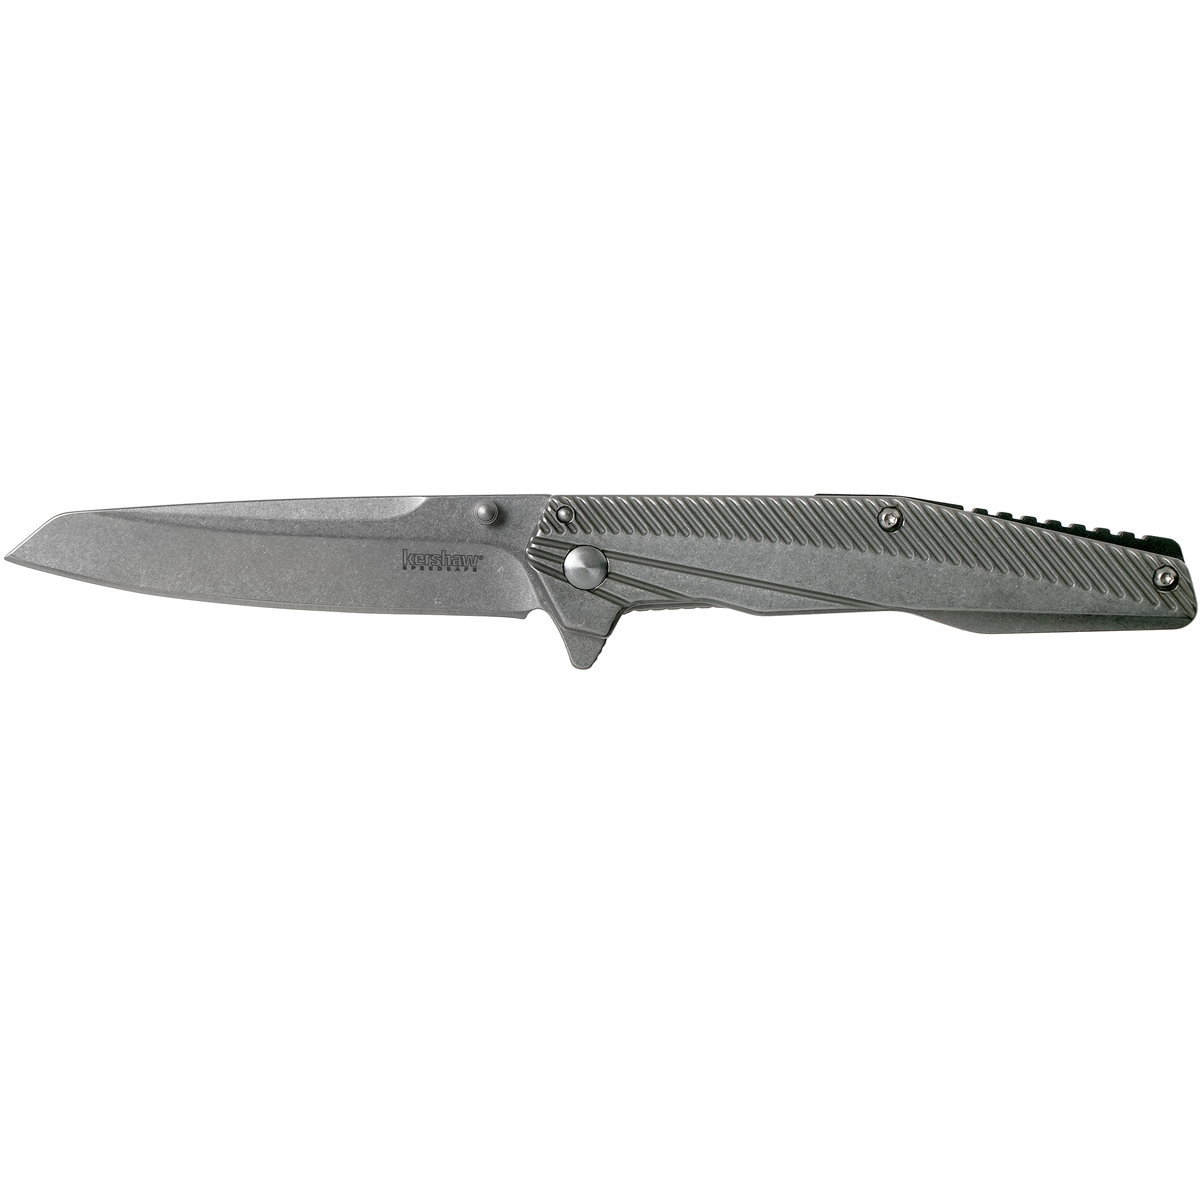 Полуавтоматический складной нож Kershaw Topknot, сталь 8Cr13MoV, рукоять нержавеющая сталь